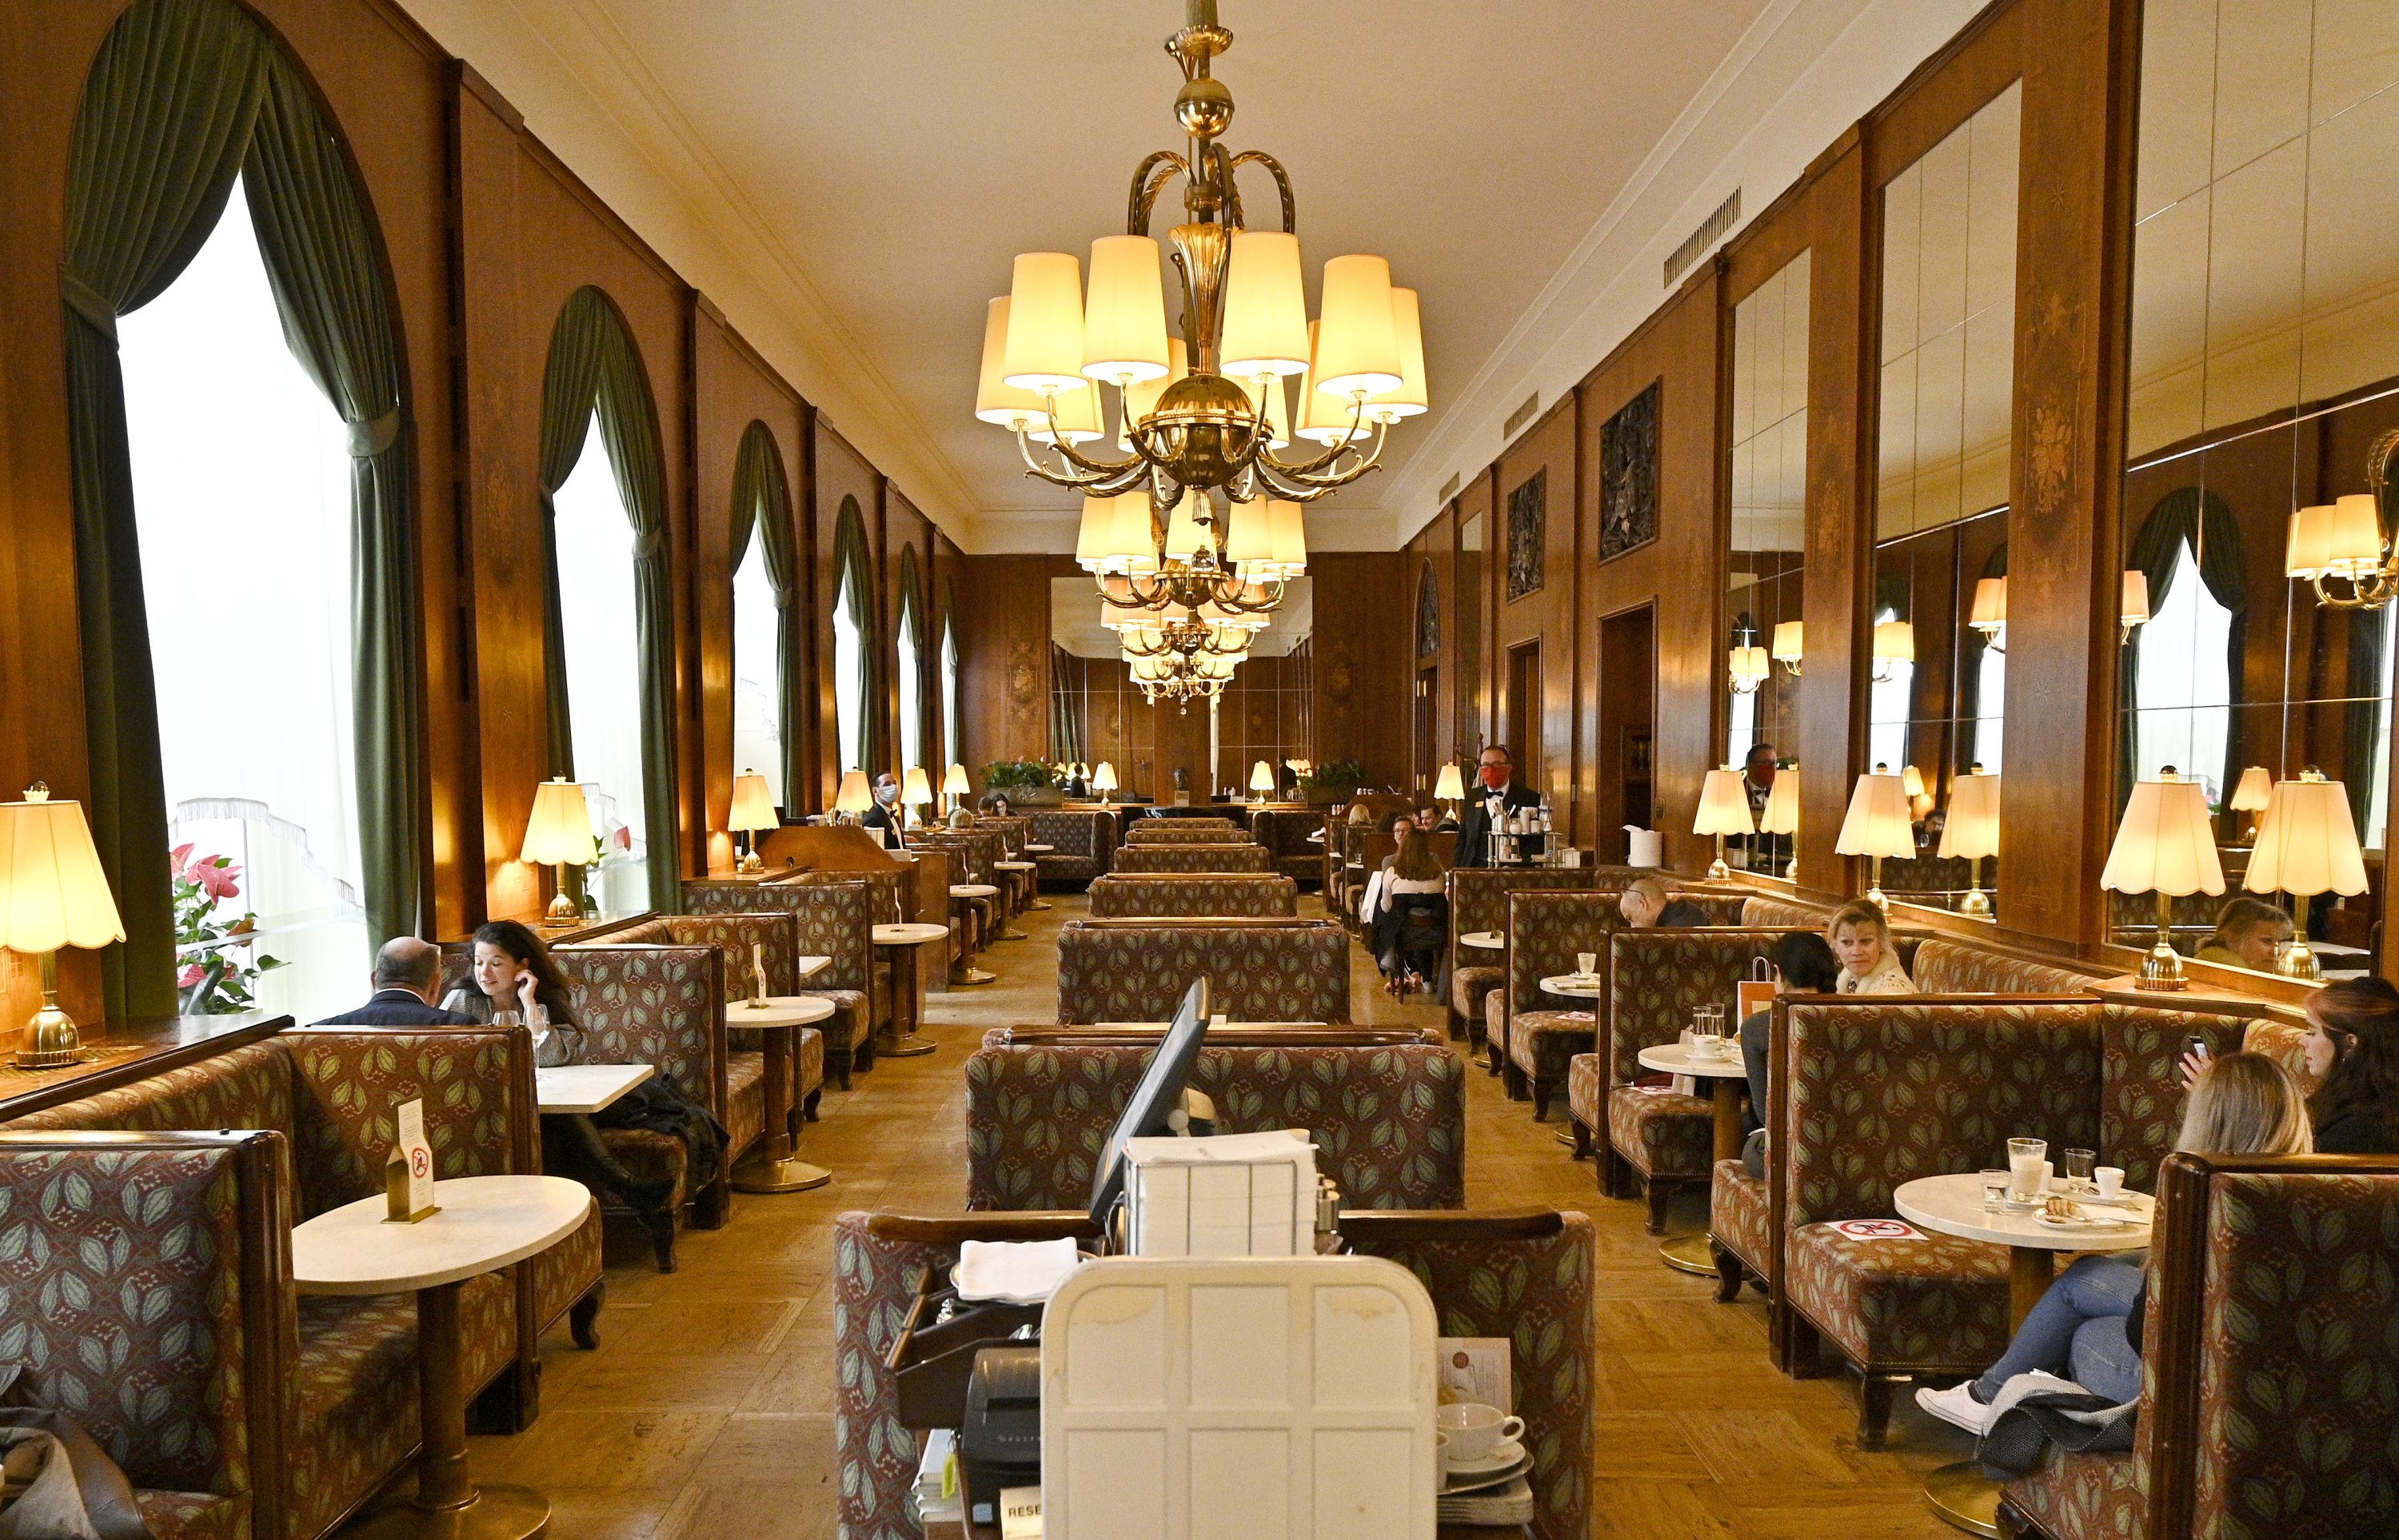 Cafe Landtmann yang bersejarah di Wina berasal dari masa Pameran Dunia Wina pada tahun 1873, Wina, Austria, 15 Mei 2020. (Foto dpa)